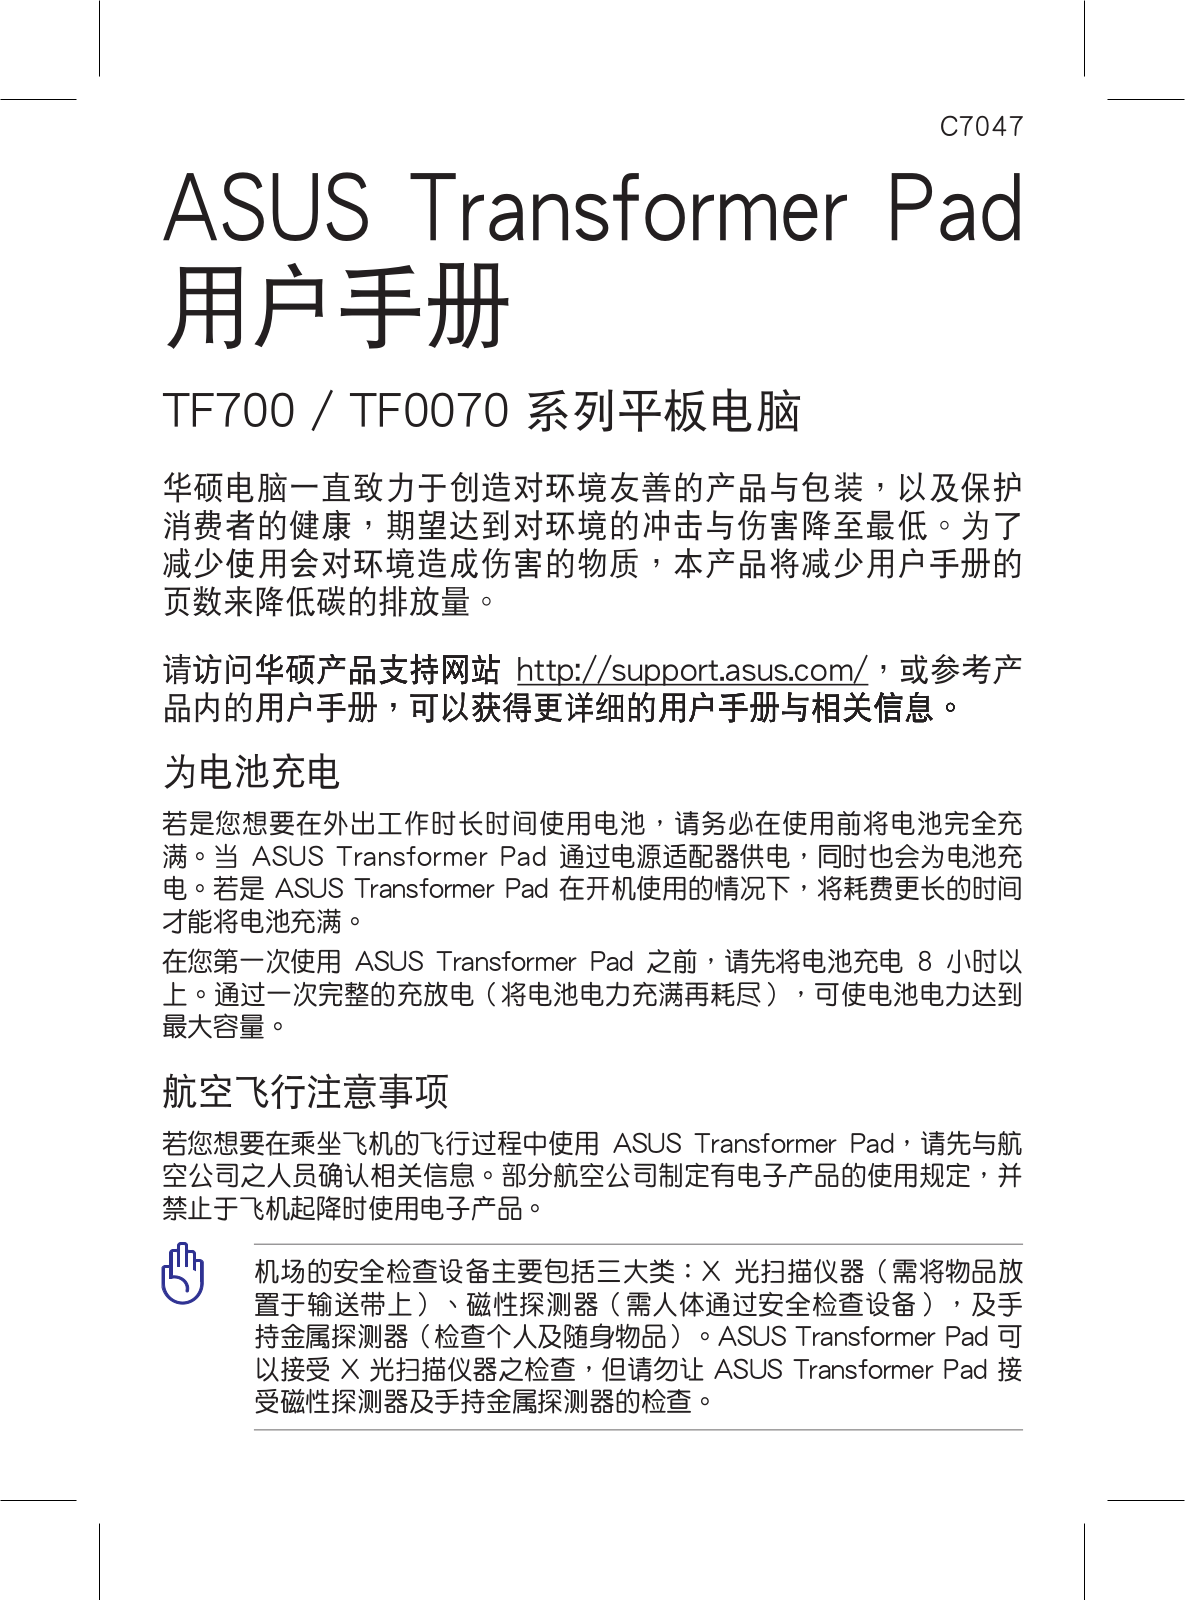 ASUS TF700T, C7047 User Manual